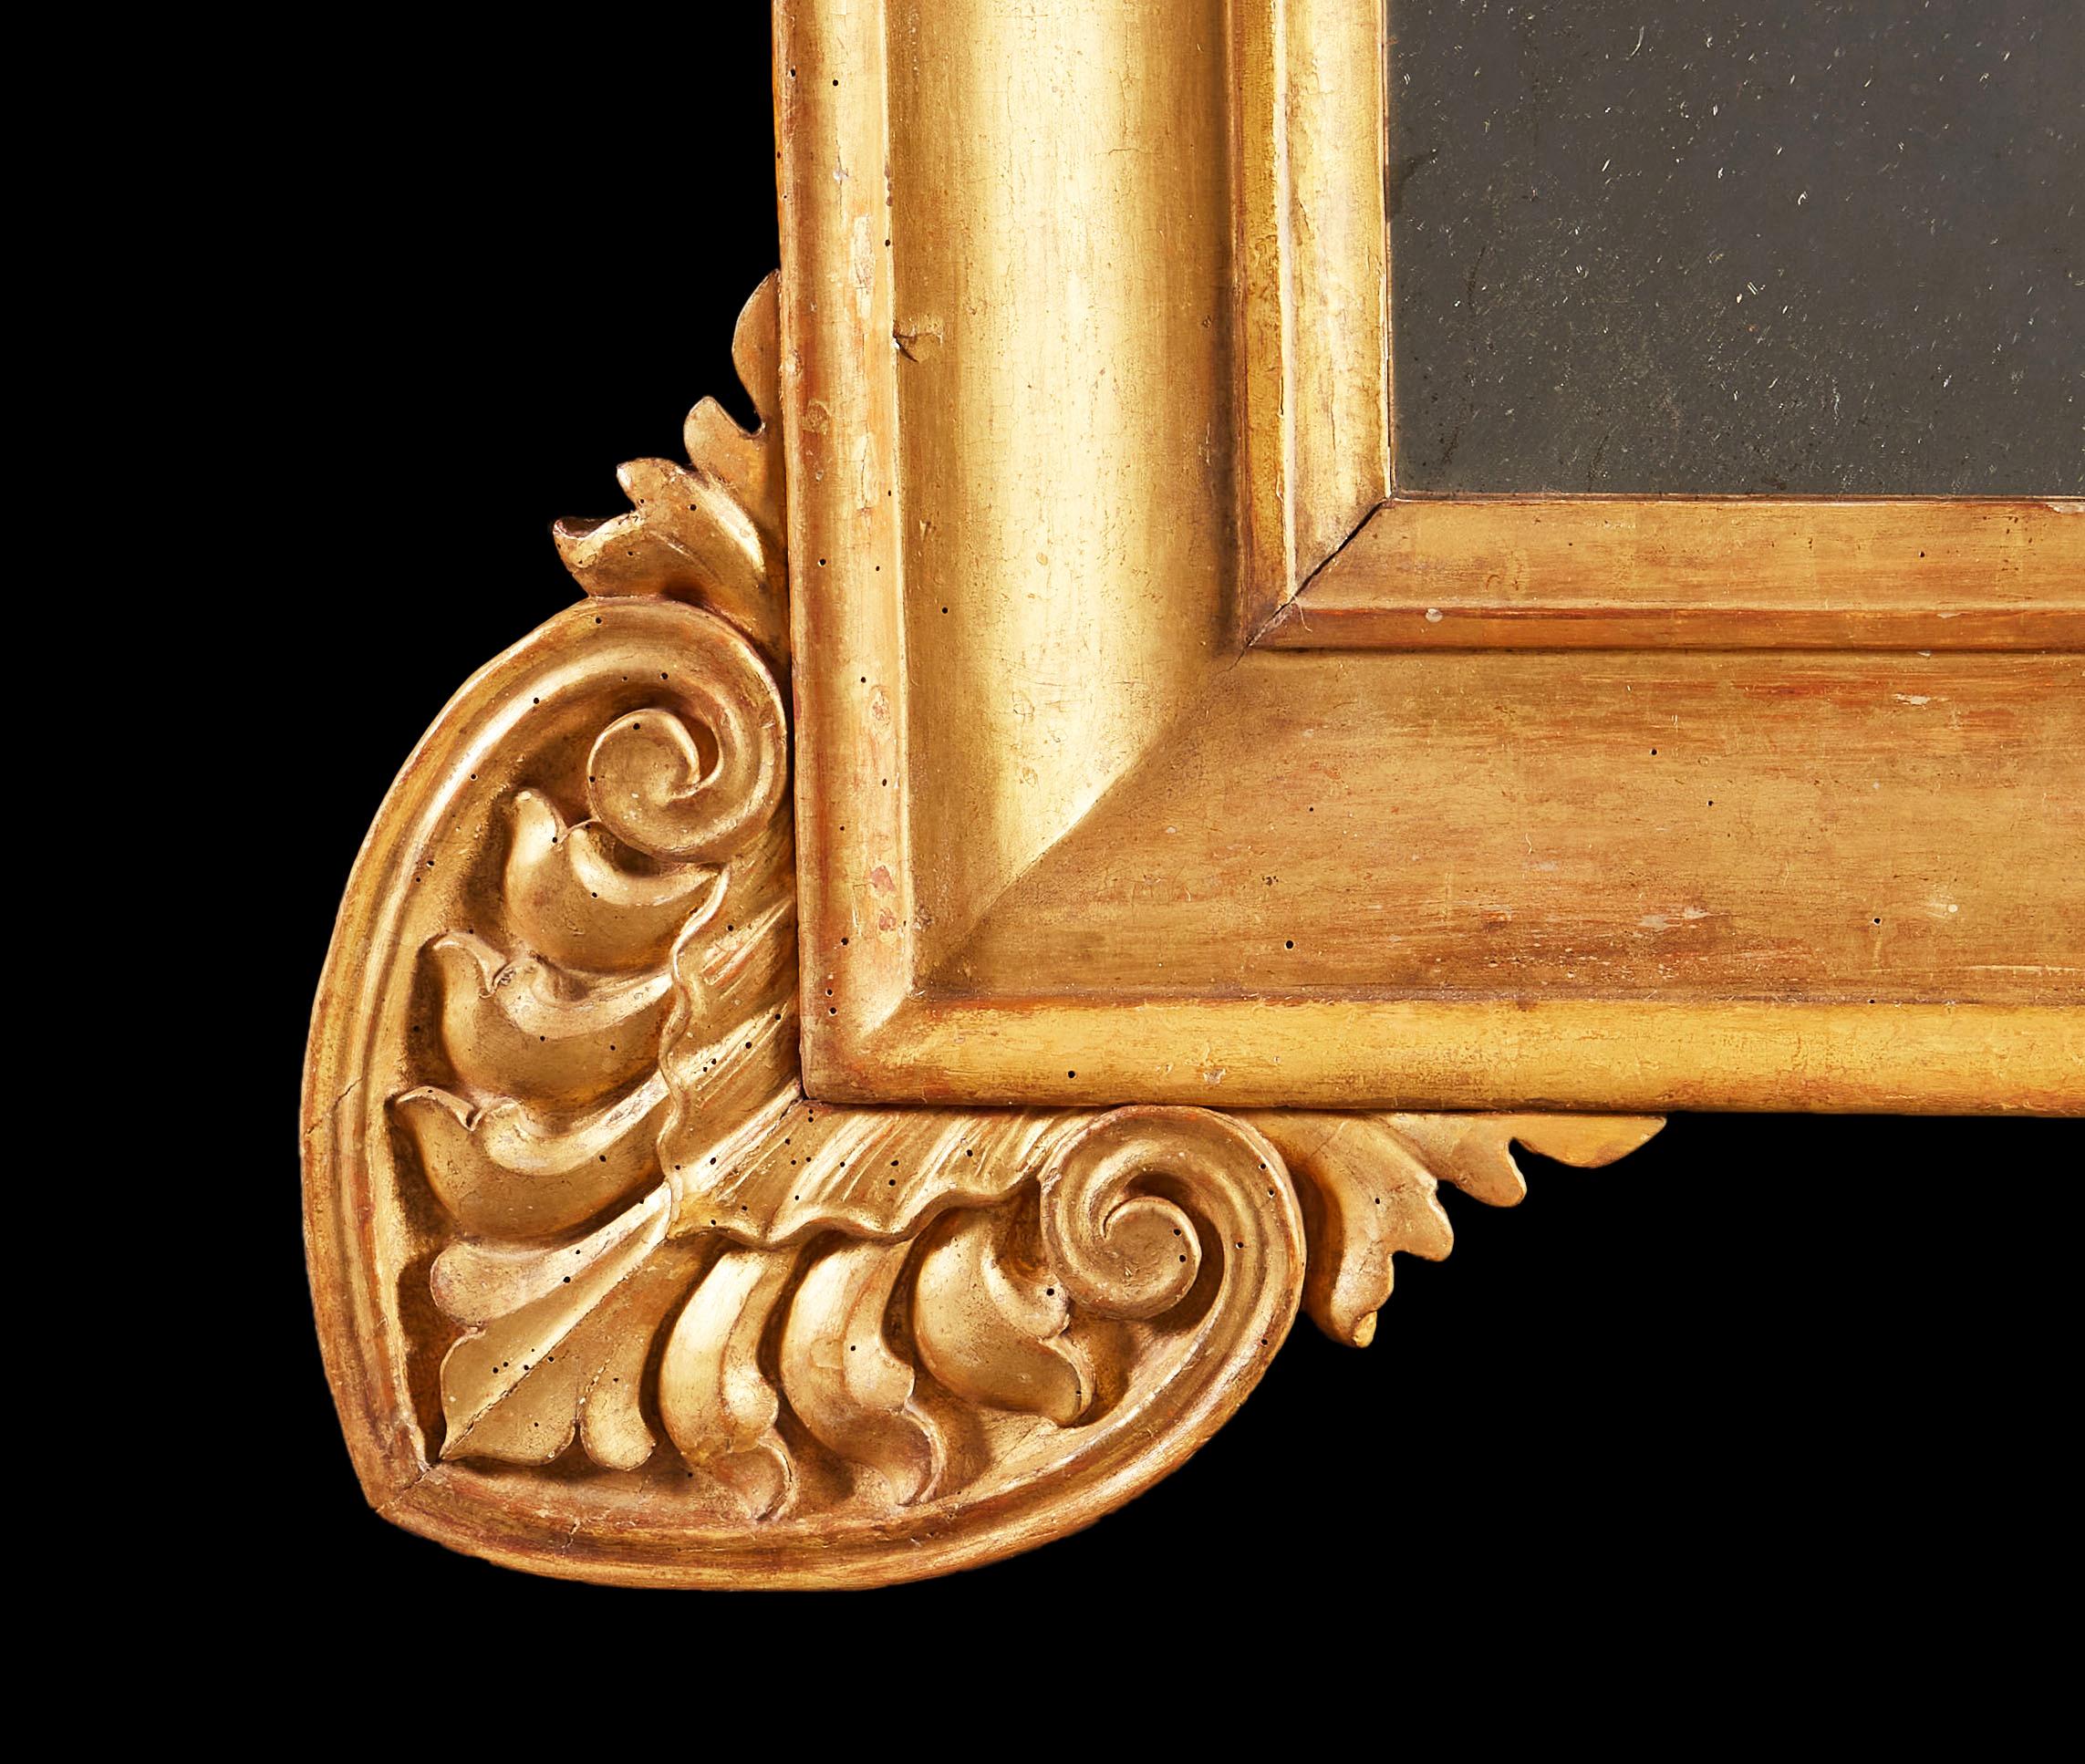 Miroir en bois doré du début du XIXe siècle, de grande taille, avec des hymnes stylisés dans les coins, avec une plaque de miroir au mercure.